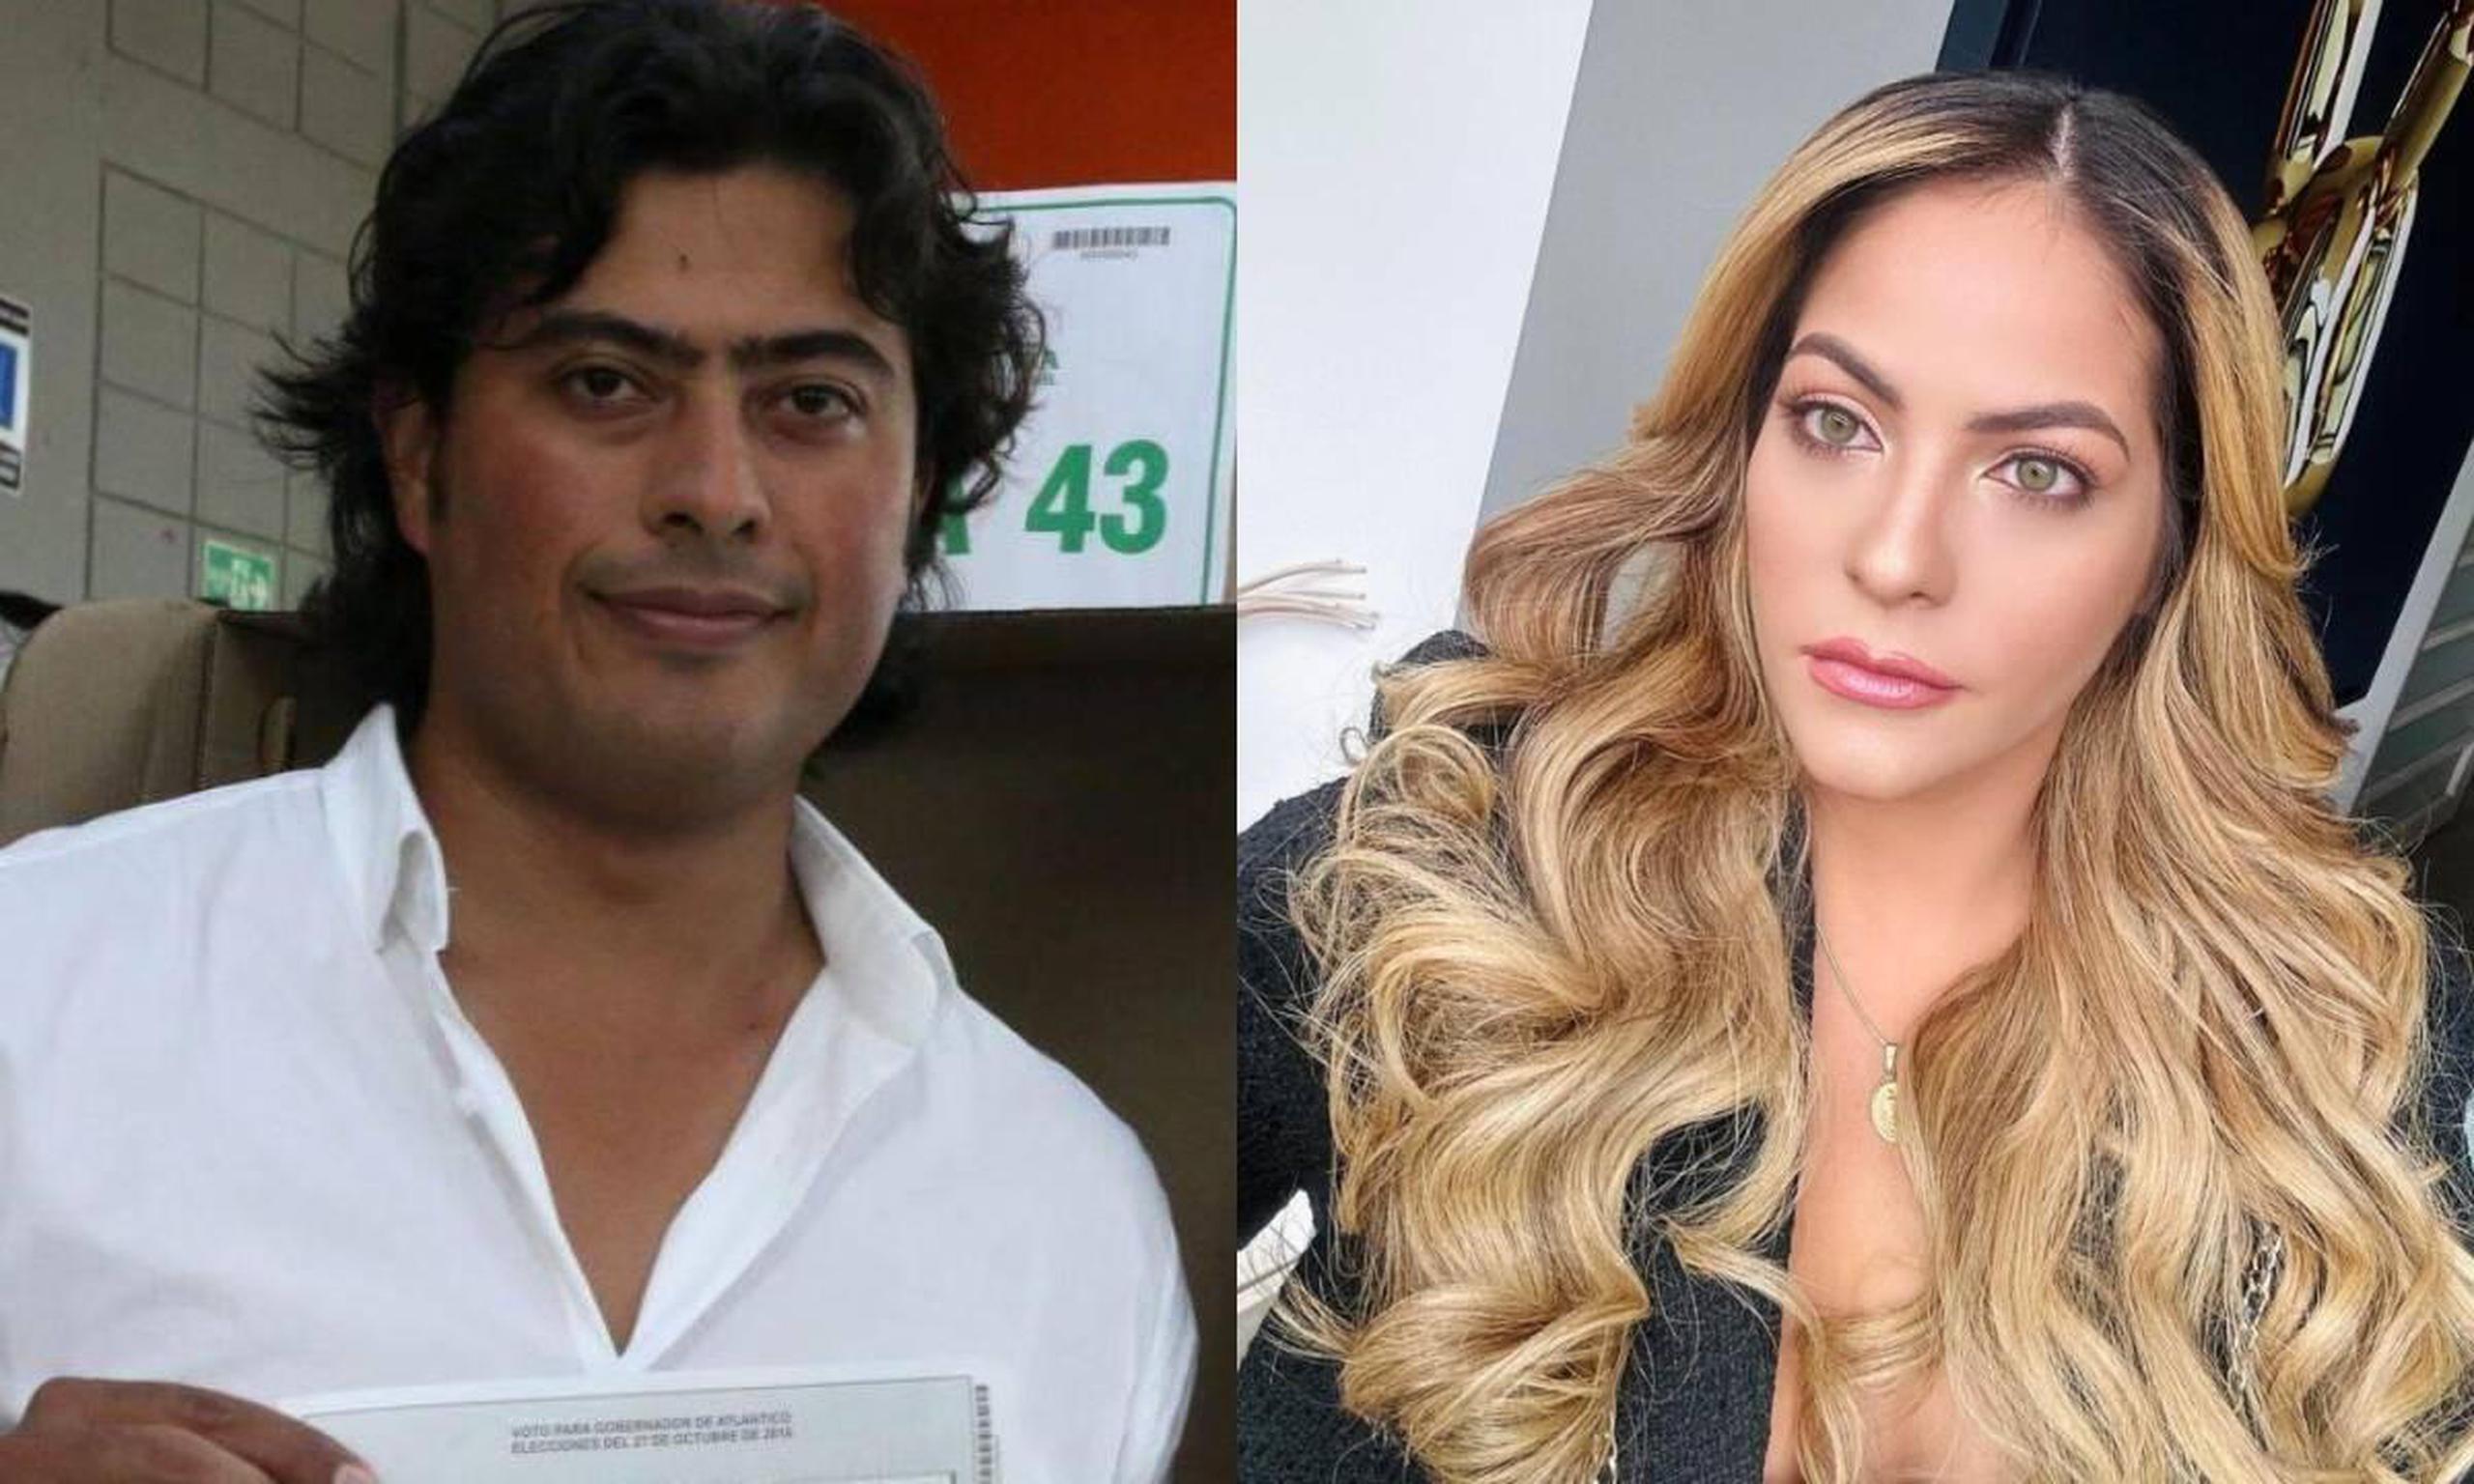 Según reveló el abogado de Nicolás Petro, tanto el hijo del presidente colombiano como su esposa, Laura Ojeda -quien tiene ocho meses de embarazo- fueron grabados desnudos durante el arresto del primero.